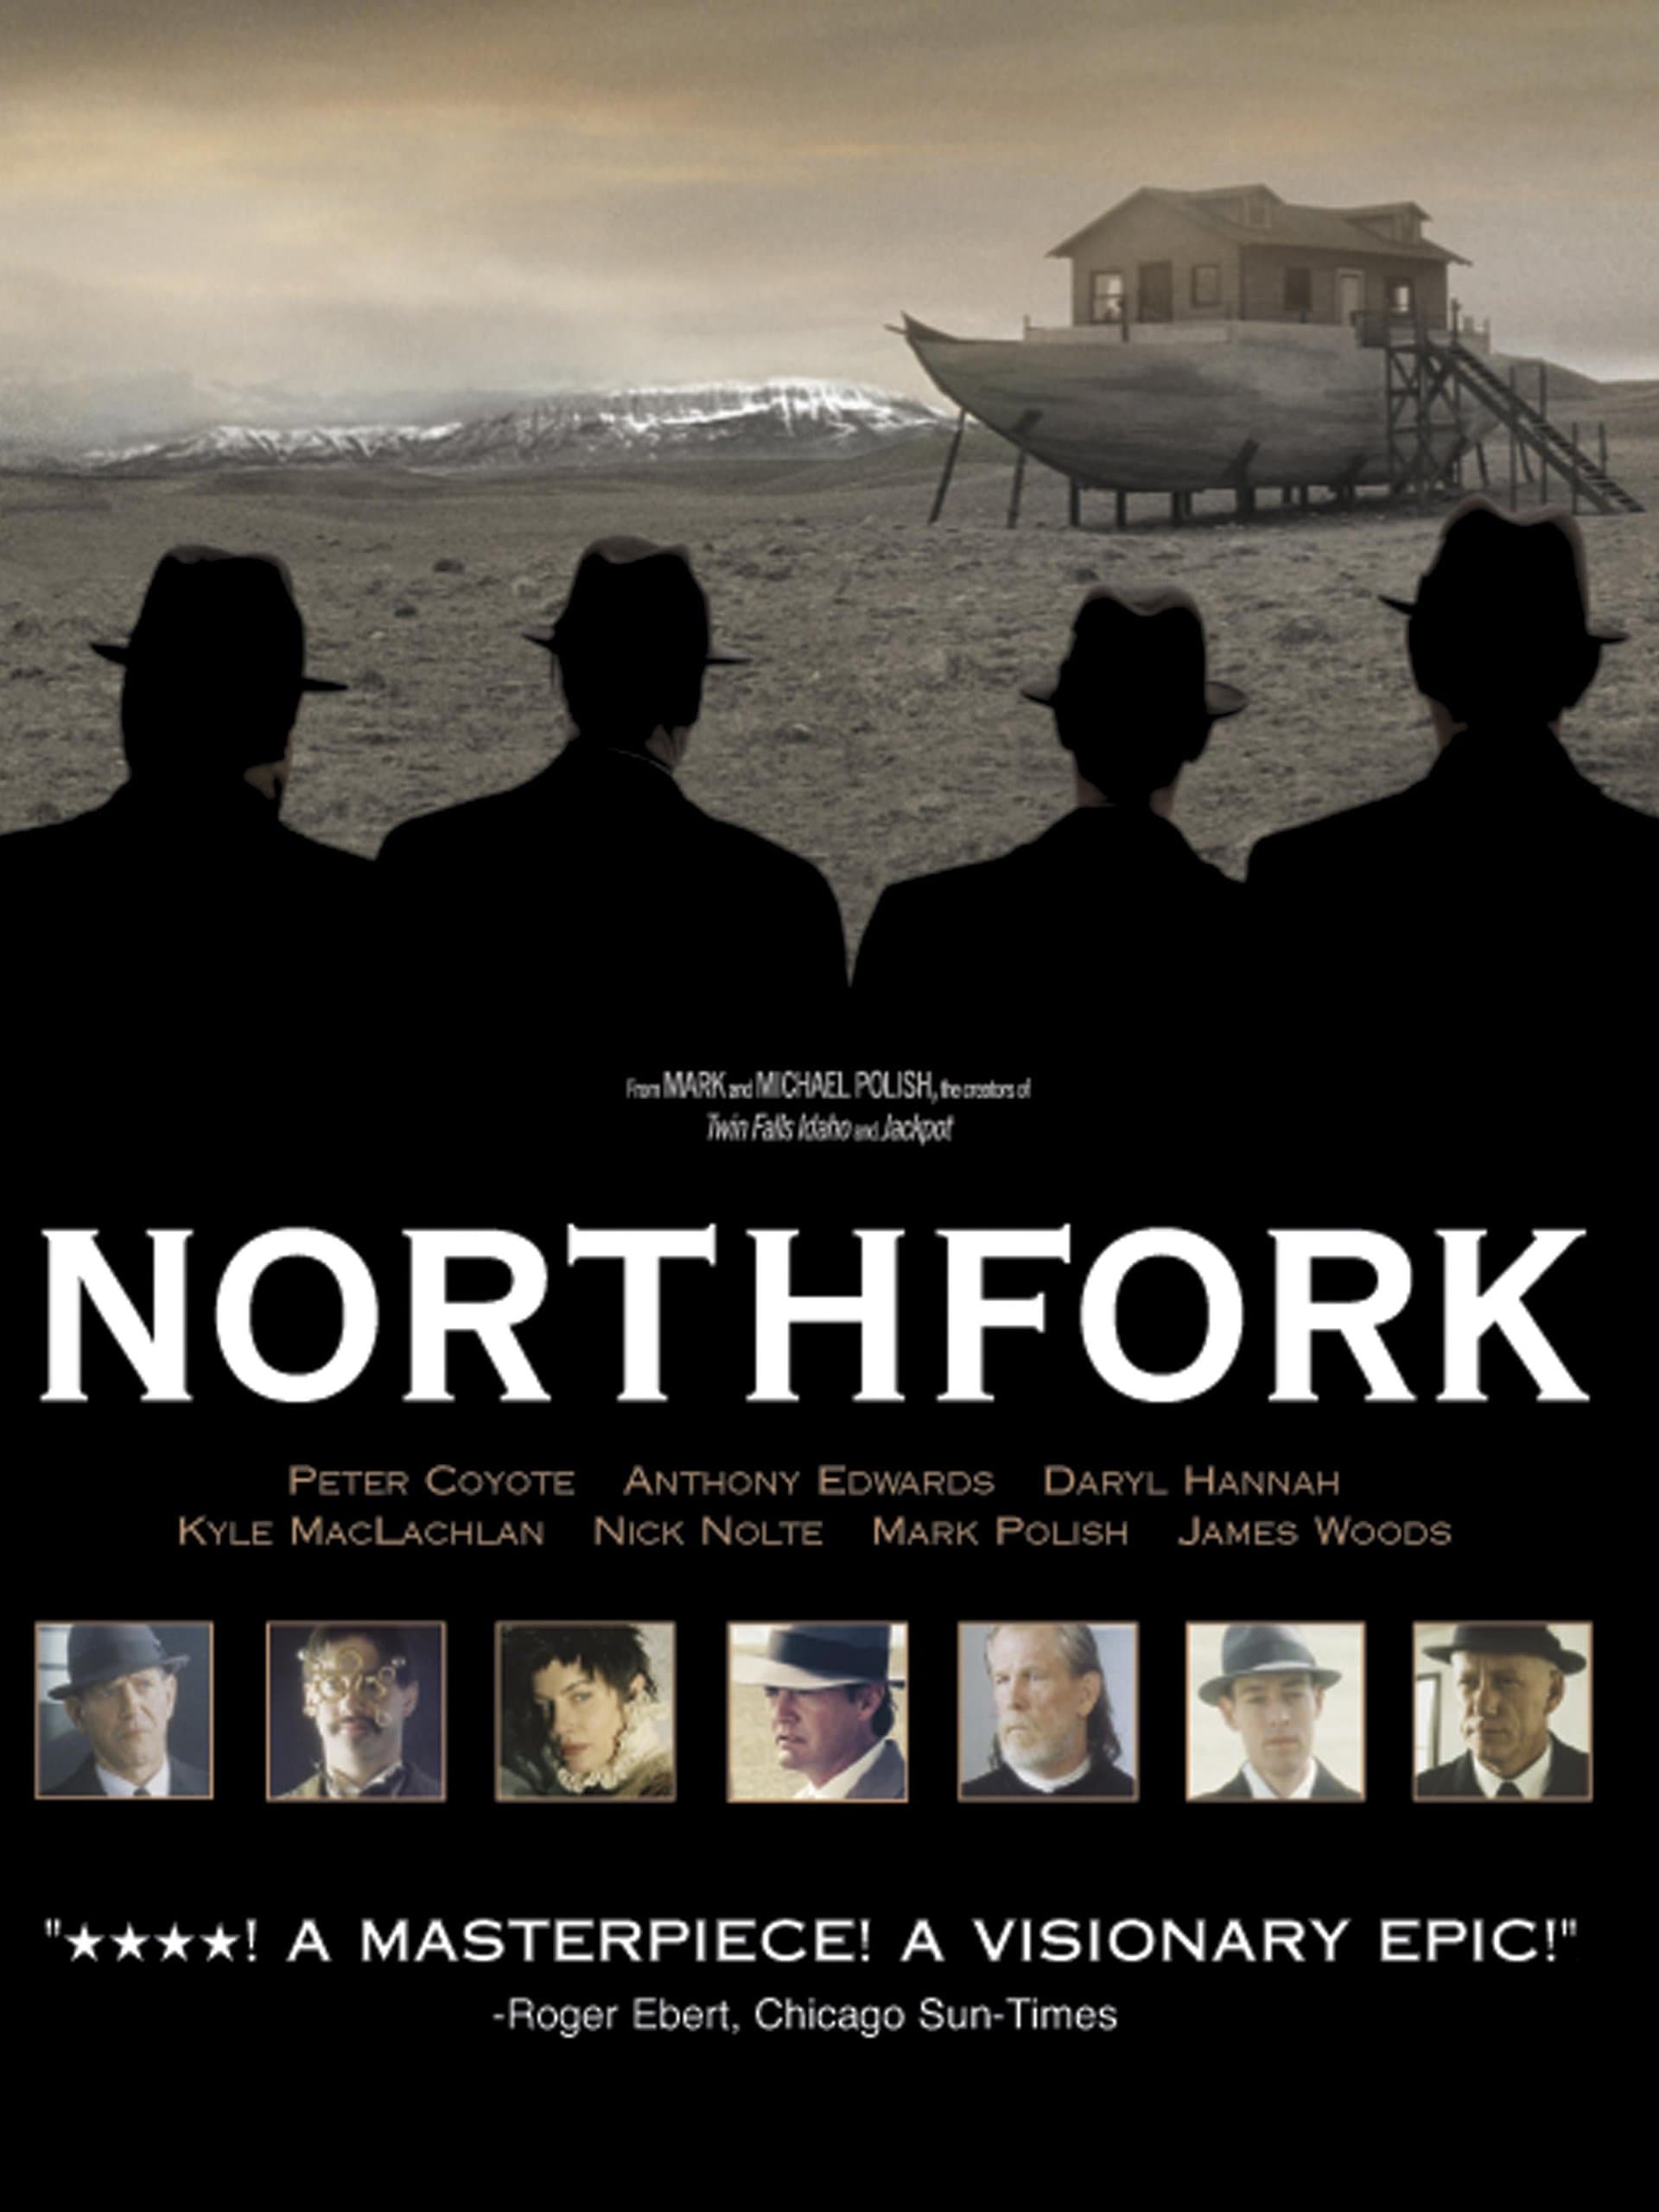 Plakat von "Northfork"